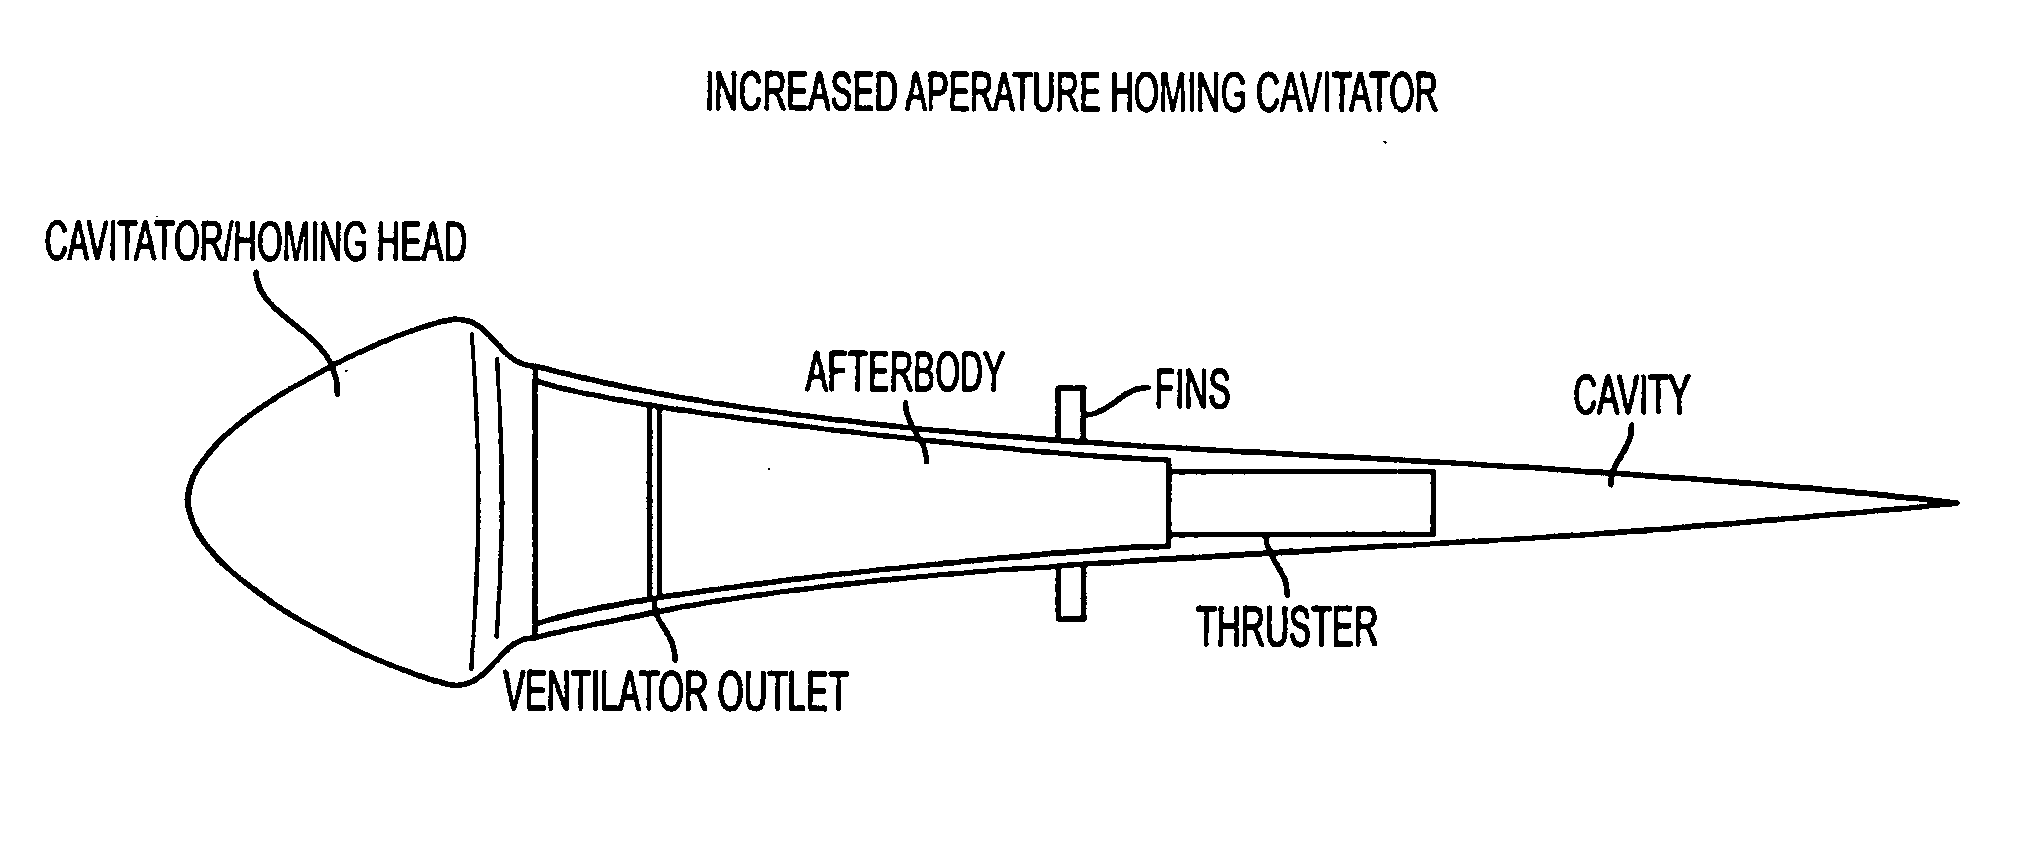 Increased aperture homing cavitator